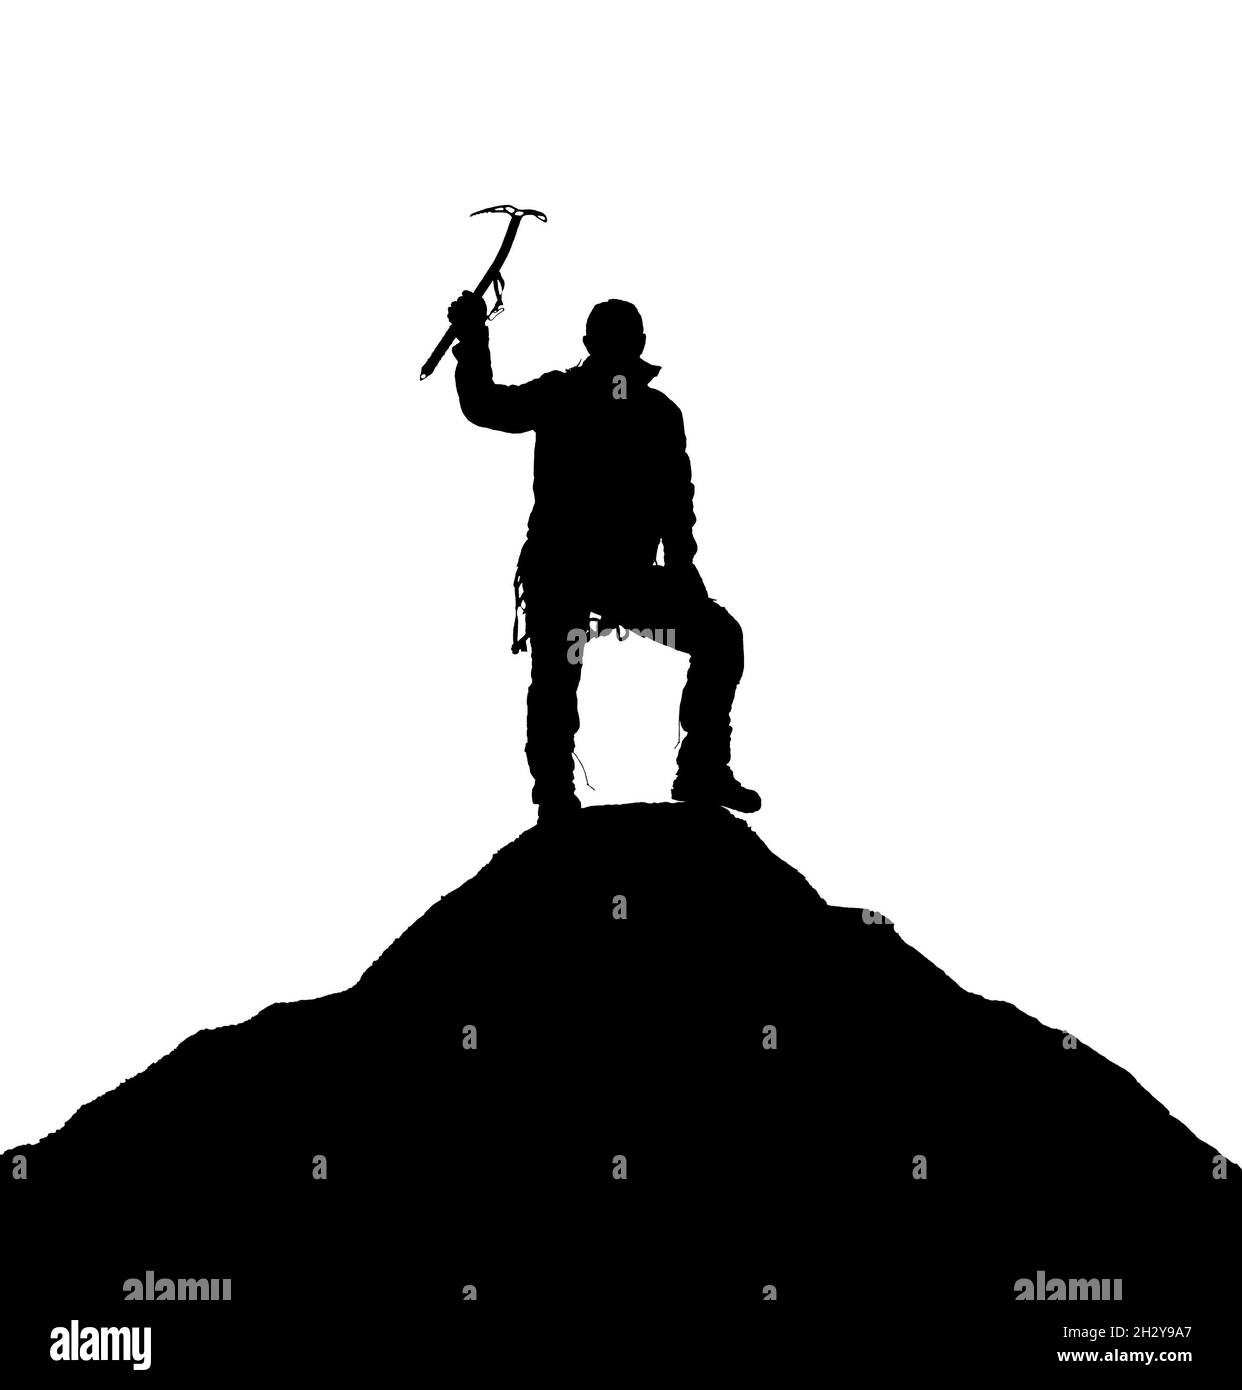 Illustration vectorielle logo silhouette d'un grimpeur avec glace hache à la main sur le support Dhaulagiri silhouette noire sur fond blanc Banque D'Images